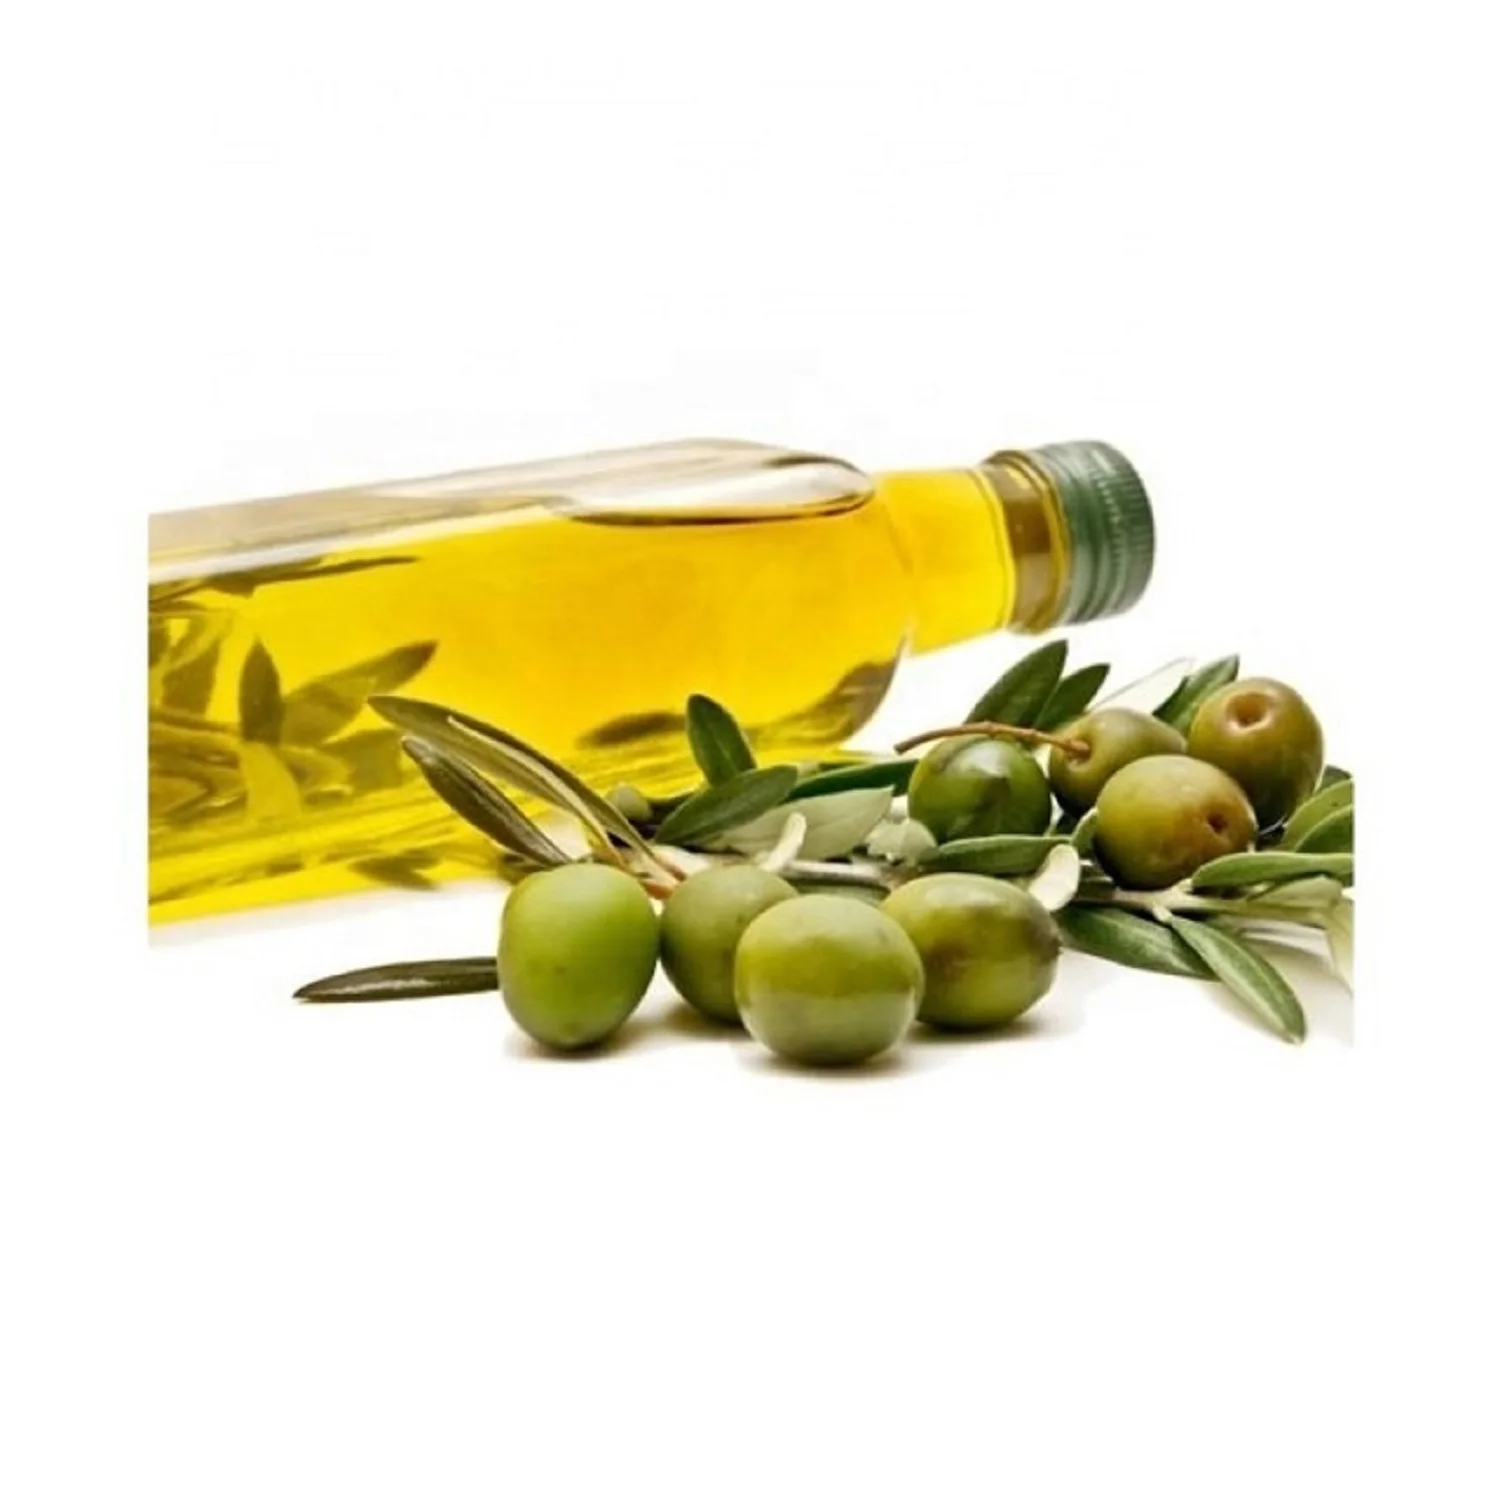 Оливковое масло имеет. Оливковое масло. Оливки масло. Оливки на белом фоне. Оливки и оливковое масло.